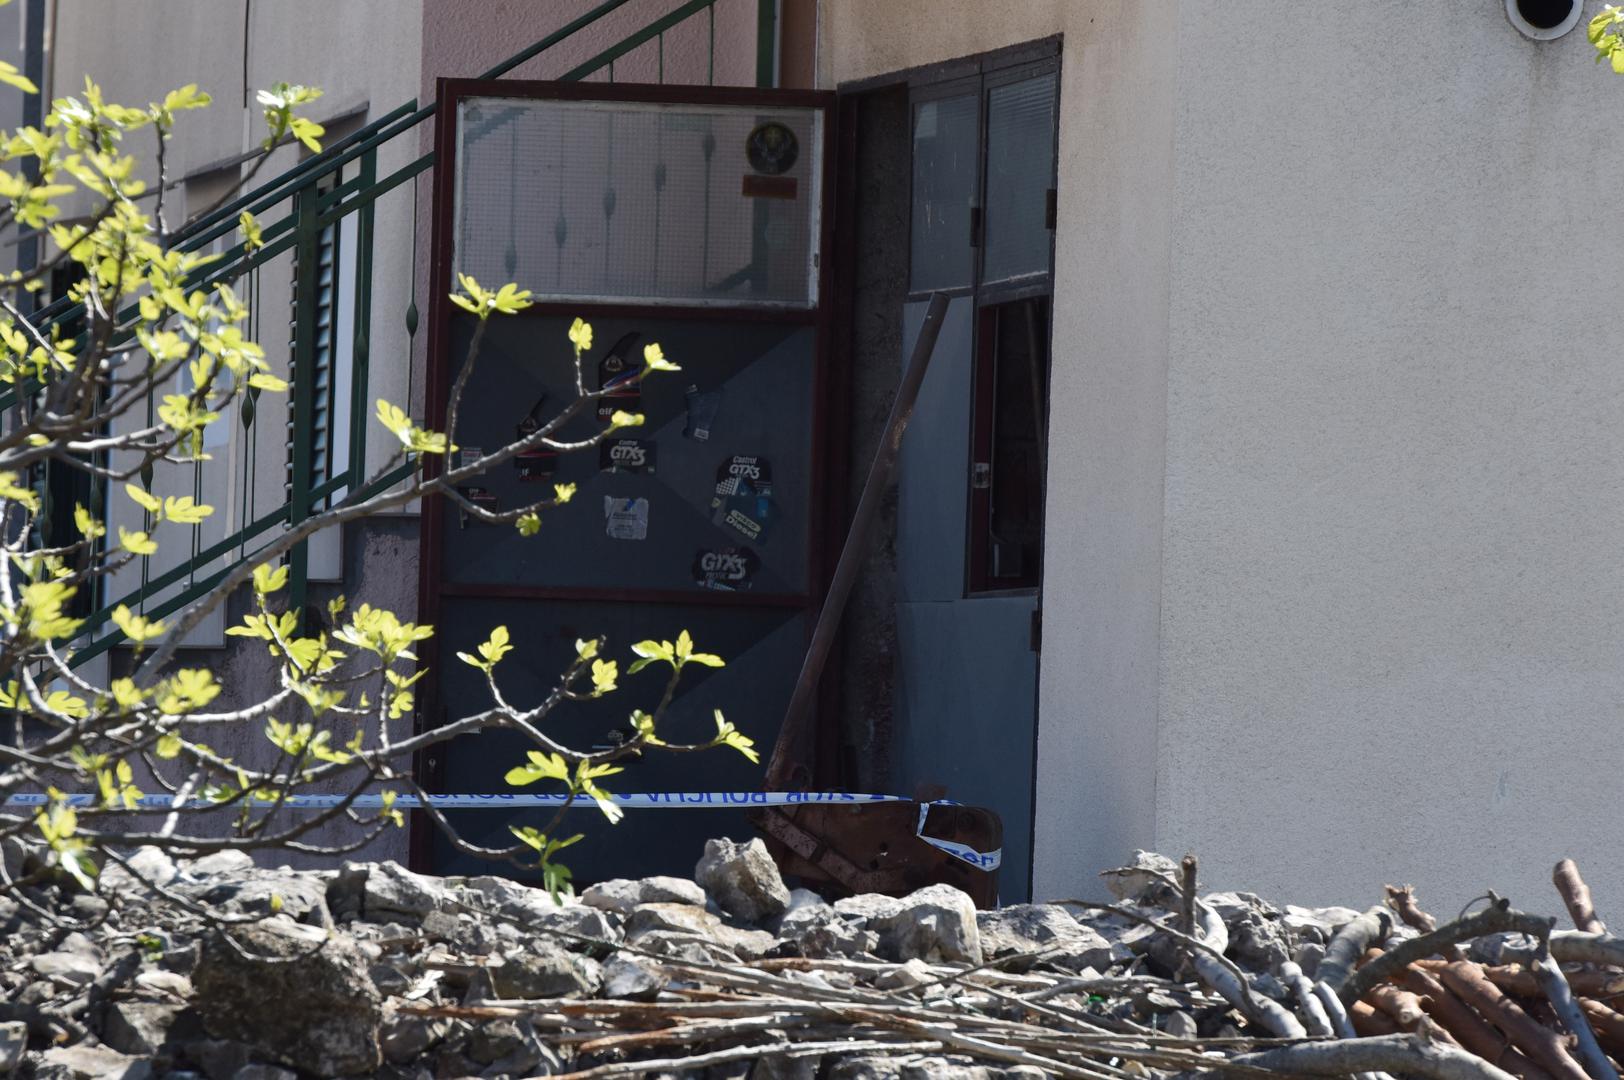 U mjestu Bilice kod Šibenika, dogodila se strašna eksplozija u garaži nakon koje je jedan muškarac teško ozlijeđen.